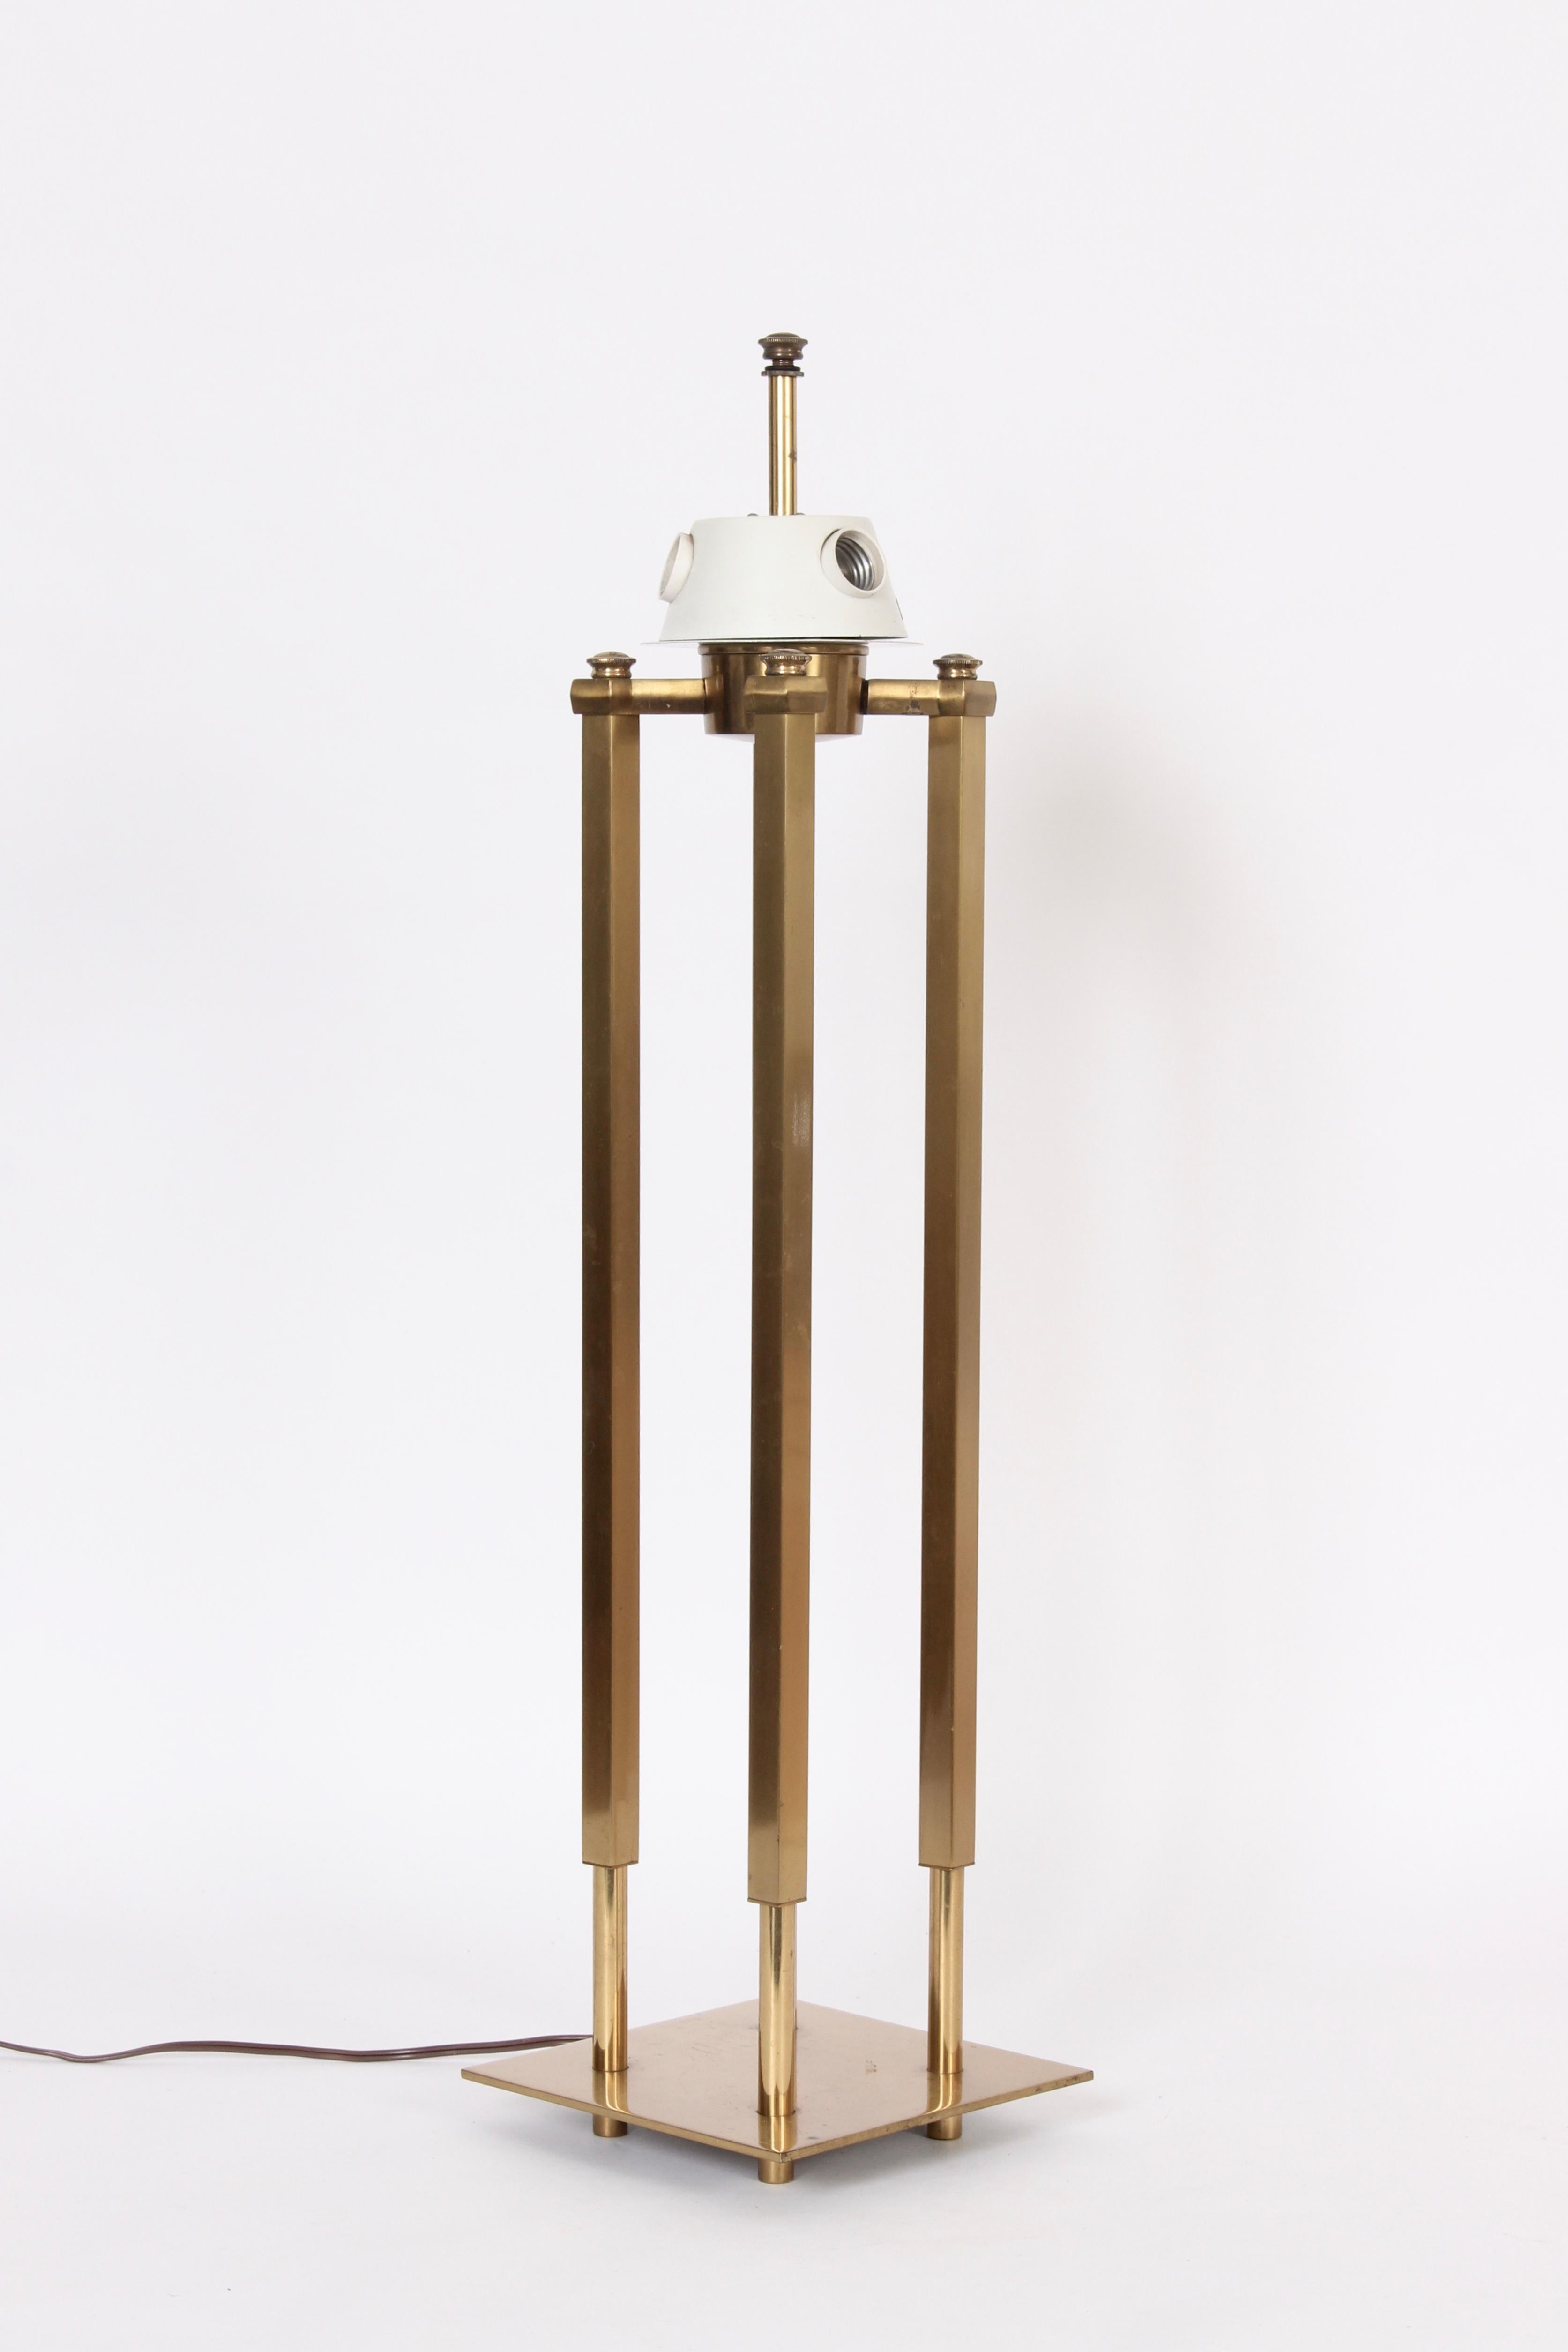 Stiffel Viersäulen-Tischlampe aus Messing mit Schirm aus Wachstuch, die oft Tommi Parzinger zugeschrieben wird.  Mit vier architektonischen quadratischen Säulen aus Messing, die sich zum Sockel hin abrunden, auf einem quadratischen Sockel aus